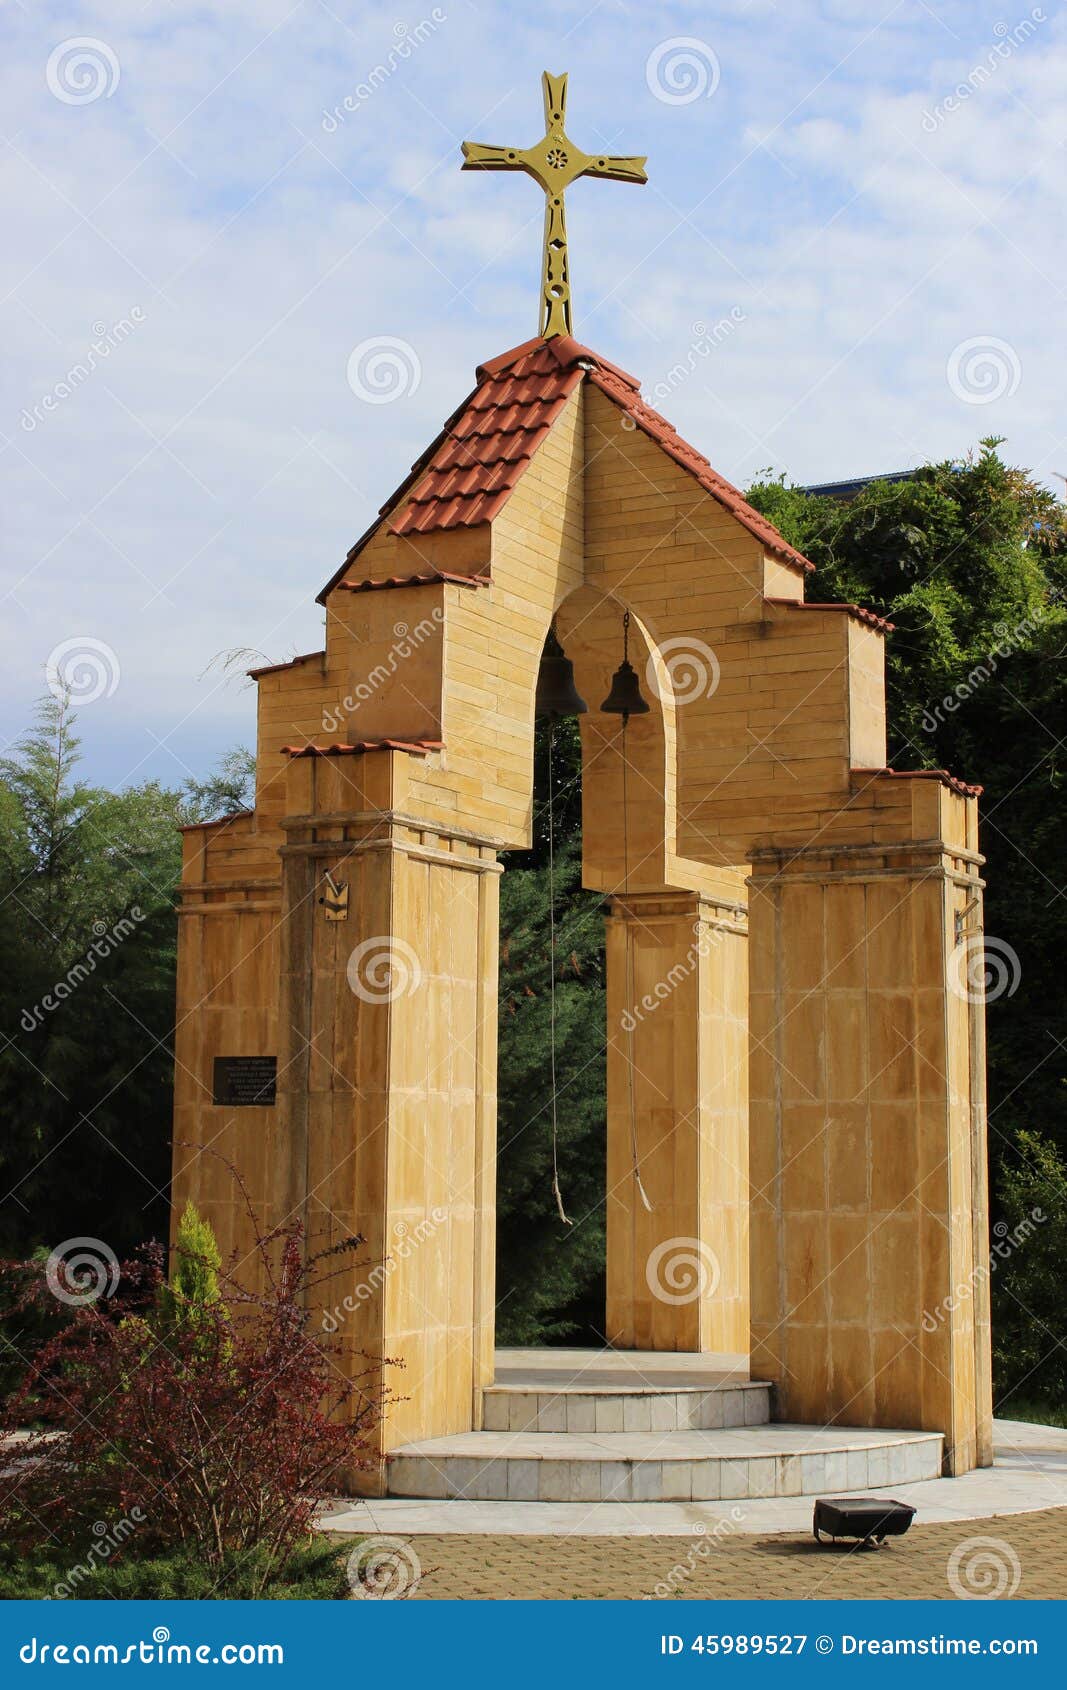 temple gregorian campanile